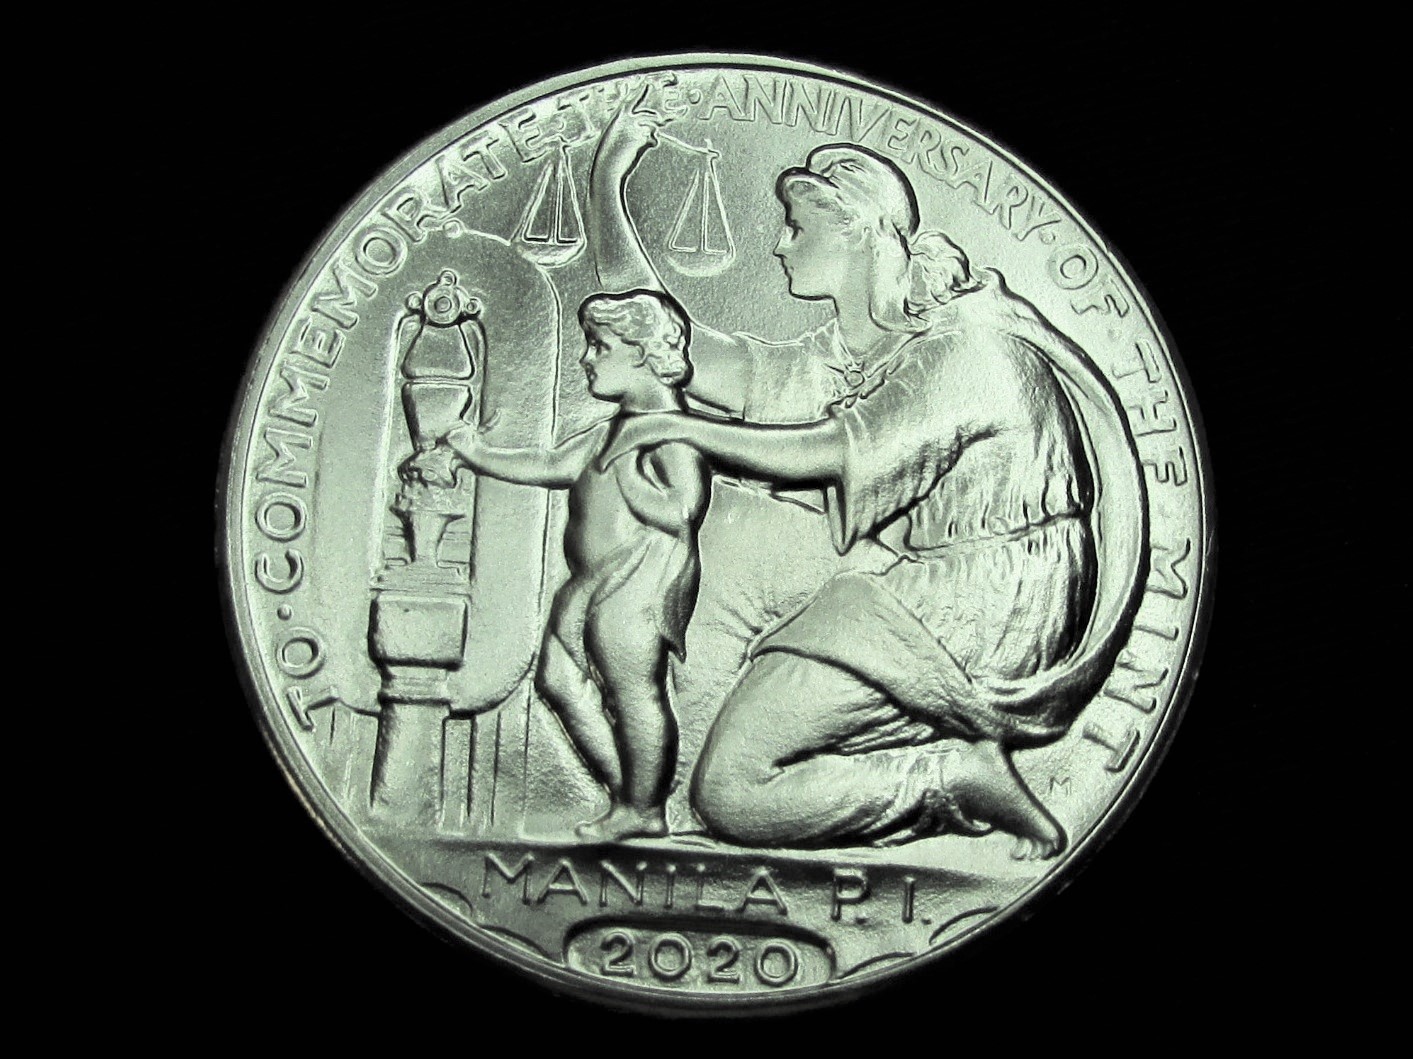 2020 Wilson 100 Year Anniversary Medal (Nickel) - reverse.JPG